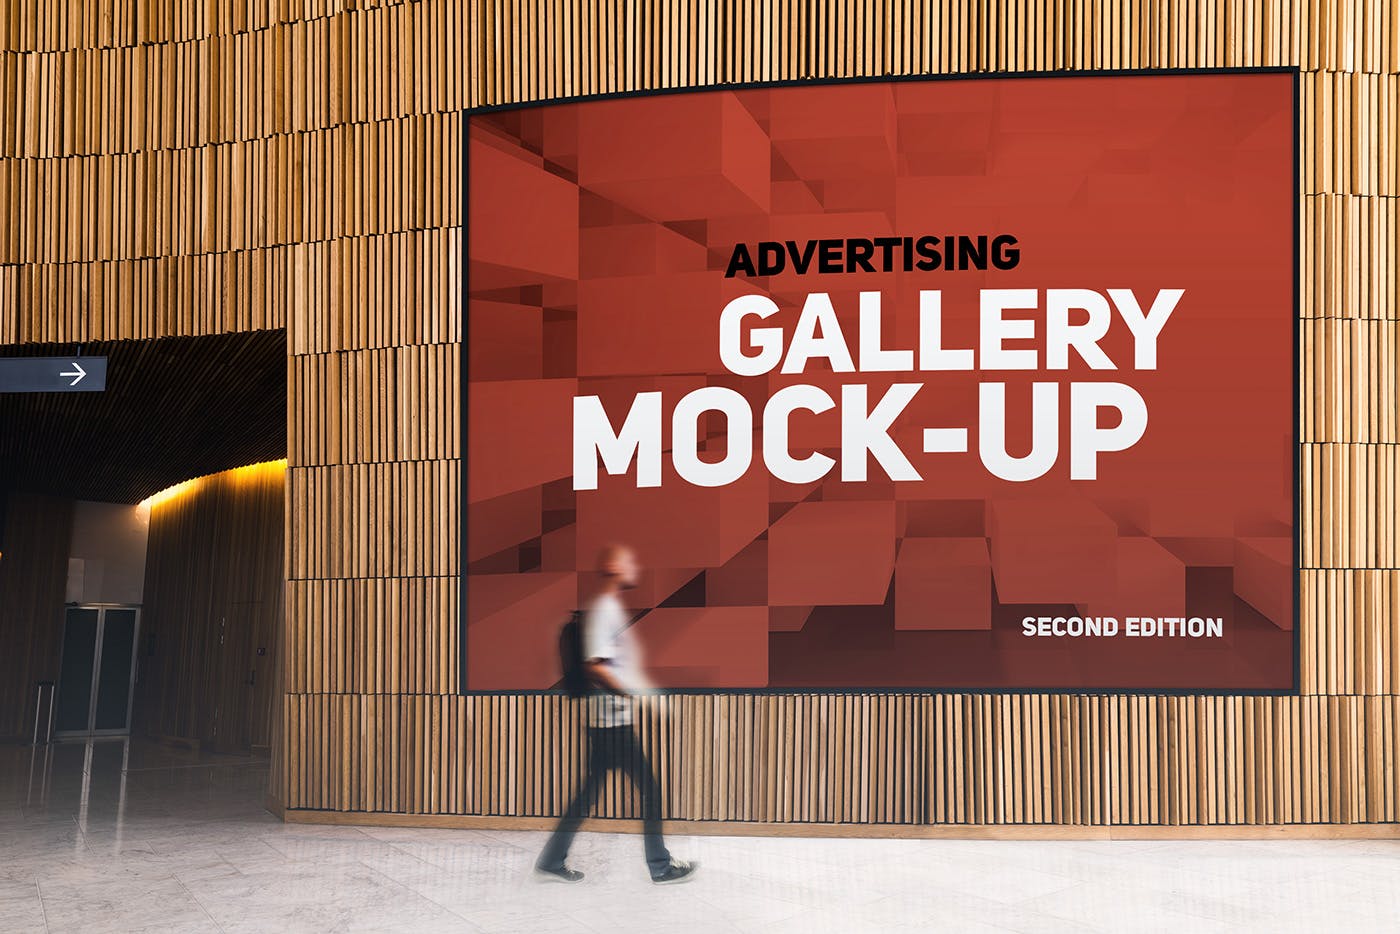 展厅画廊巨幅海报设计图样机16图库精选模板v3 Gallery Poster Mockup v.3插图(8)